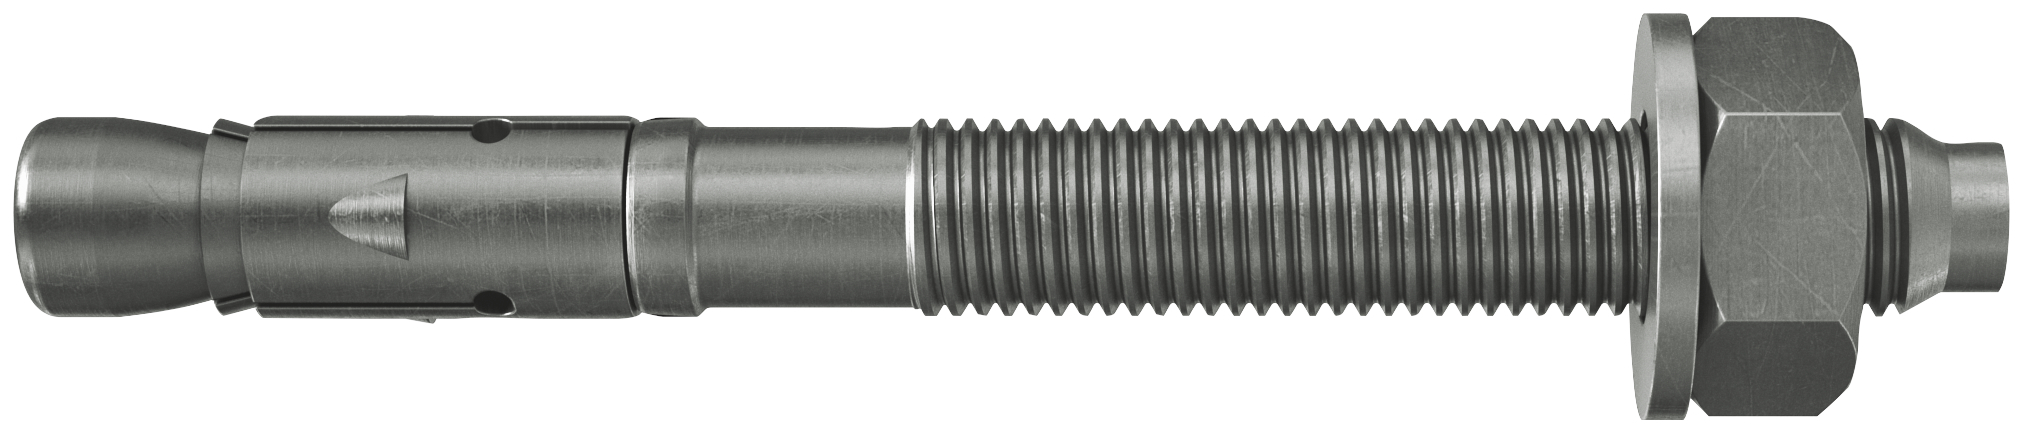 fischer Tassello acciaio FAZ II 10/70 A4 (20 Pz.) L'ancorante ad espansione ad alte prestazioni per carichi statici su calcestruzzo fessurato e per applicazioni sismiche. Versione in acciaio inossidabile con classe di resistenza alla corrosione CRC III..